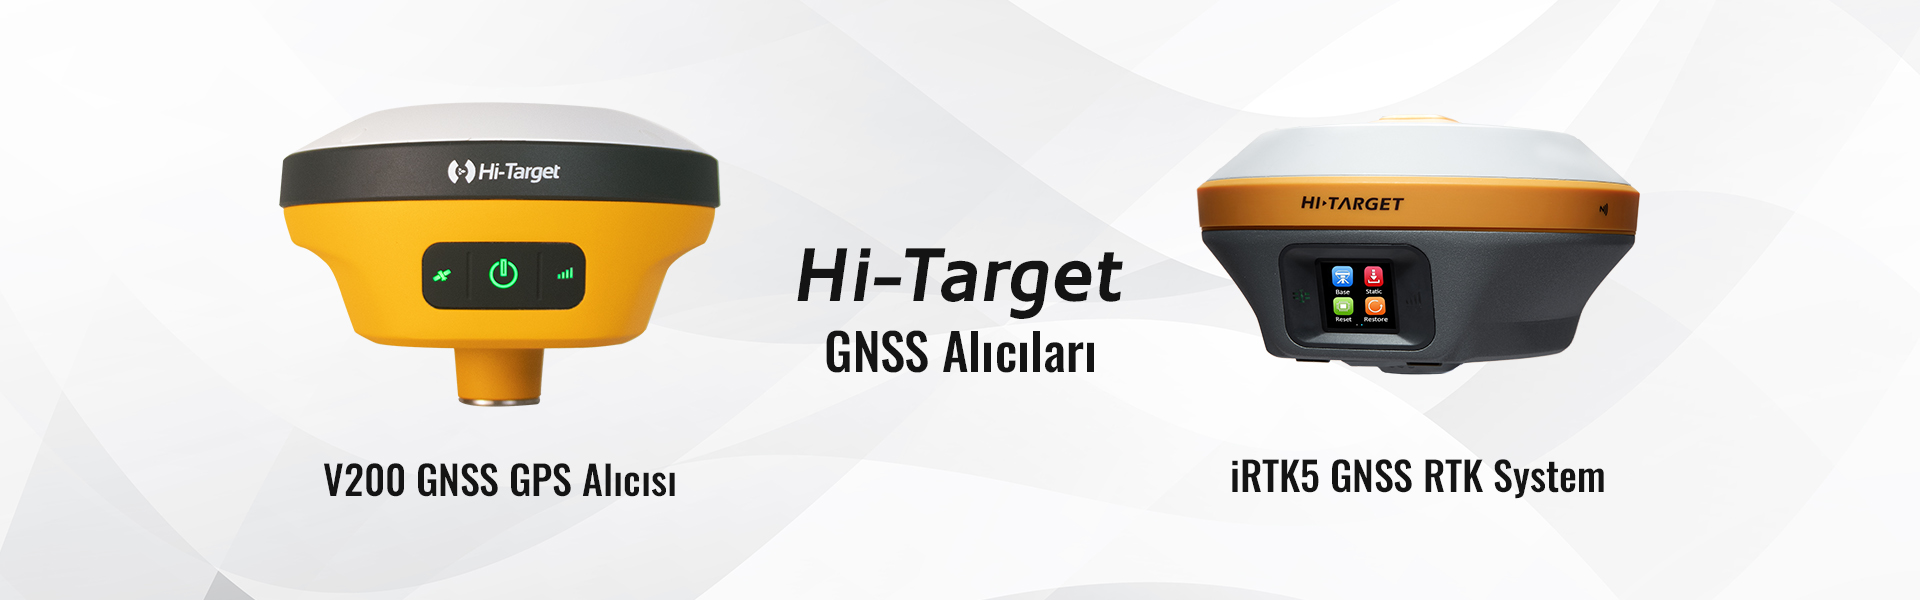 Hi-Target GNSS Slide